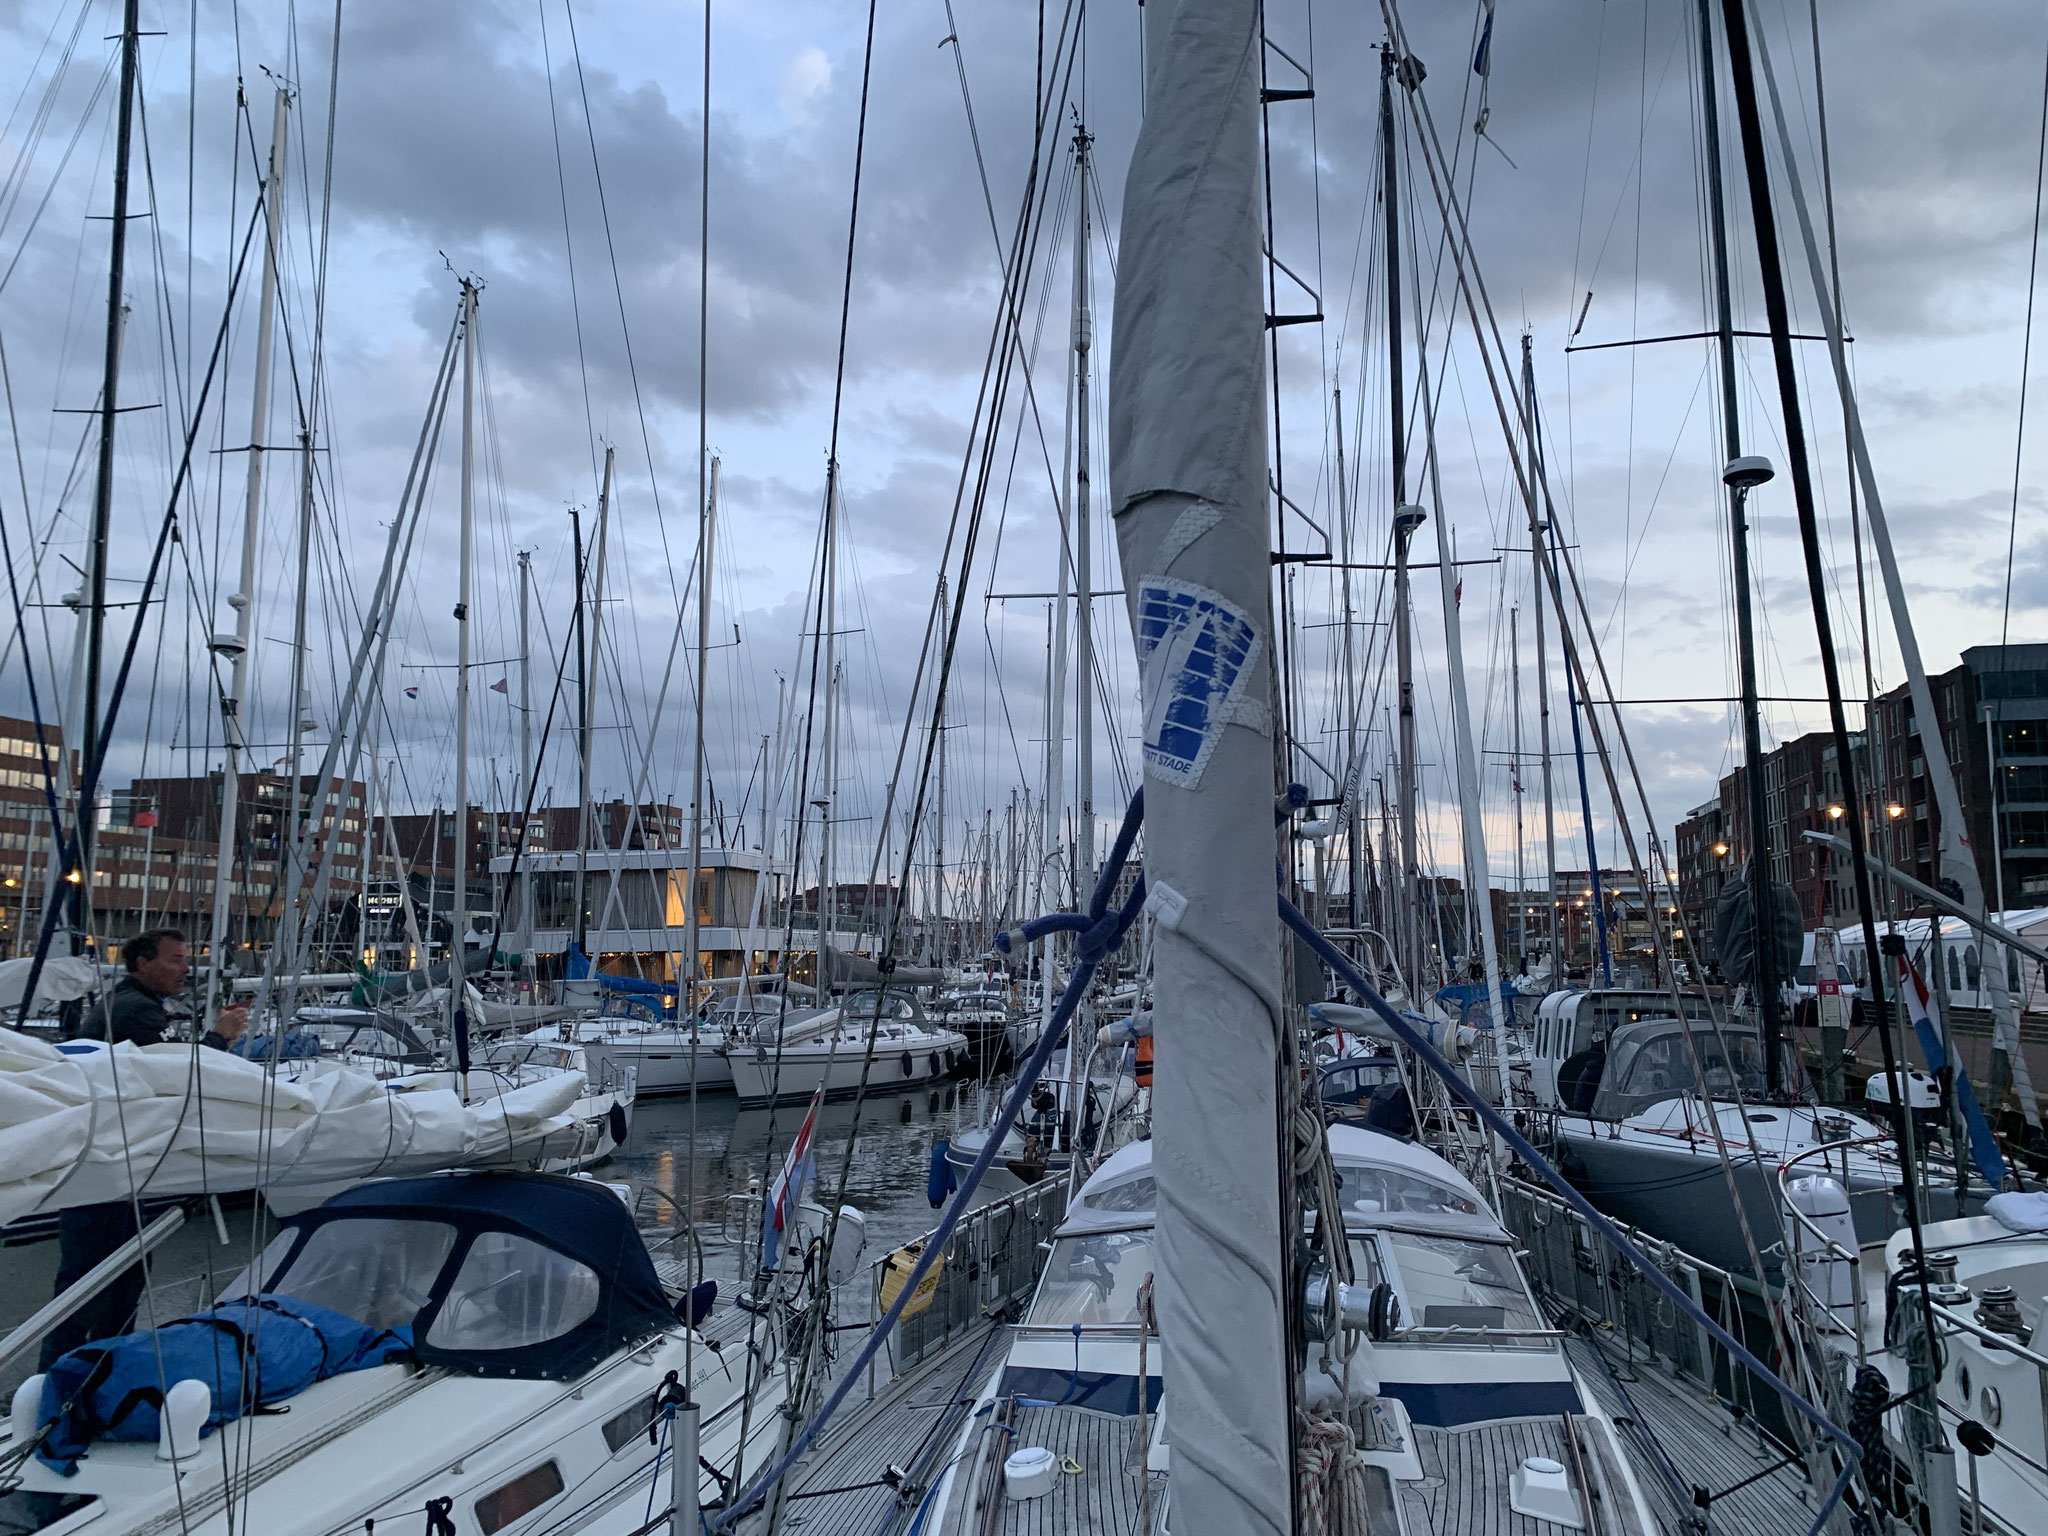 Hafen Scheveningen...Boote wo das Auge nur hinguckt